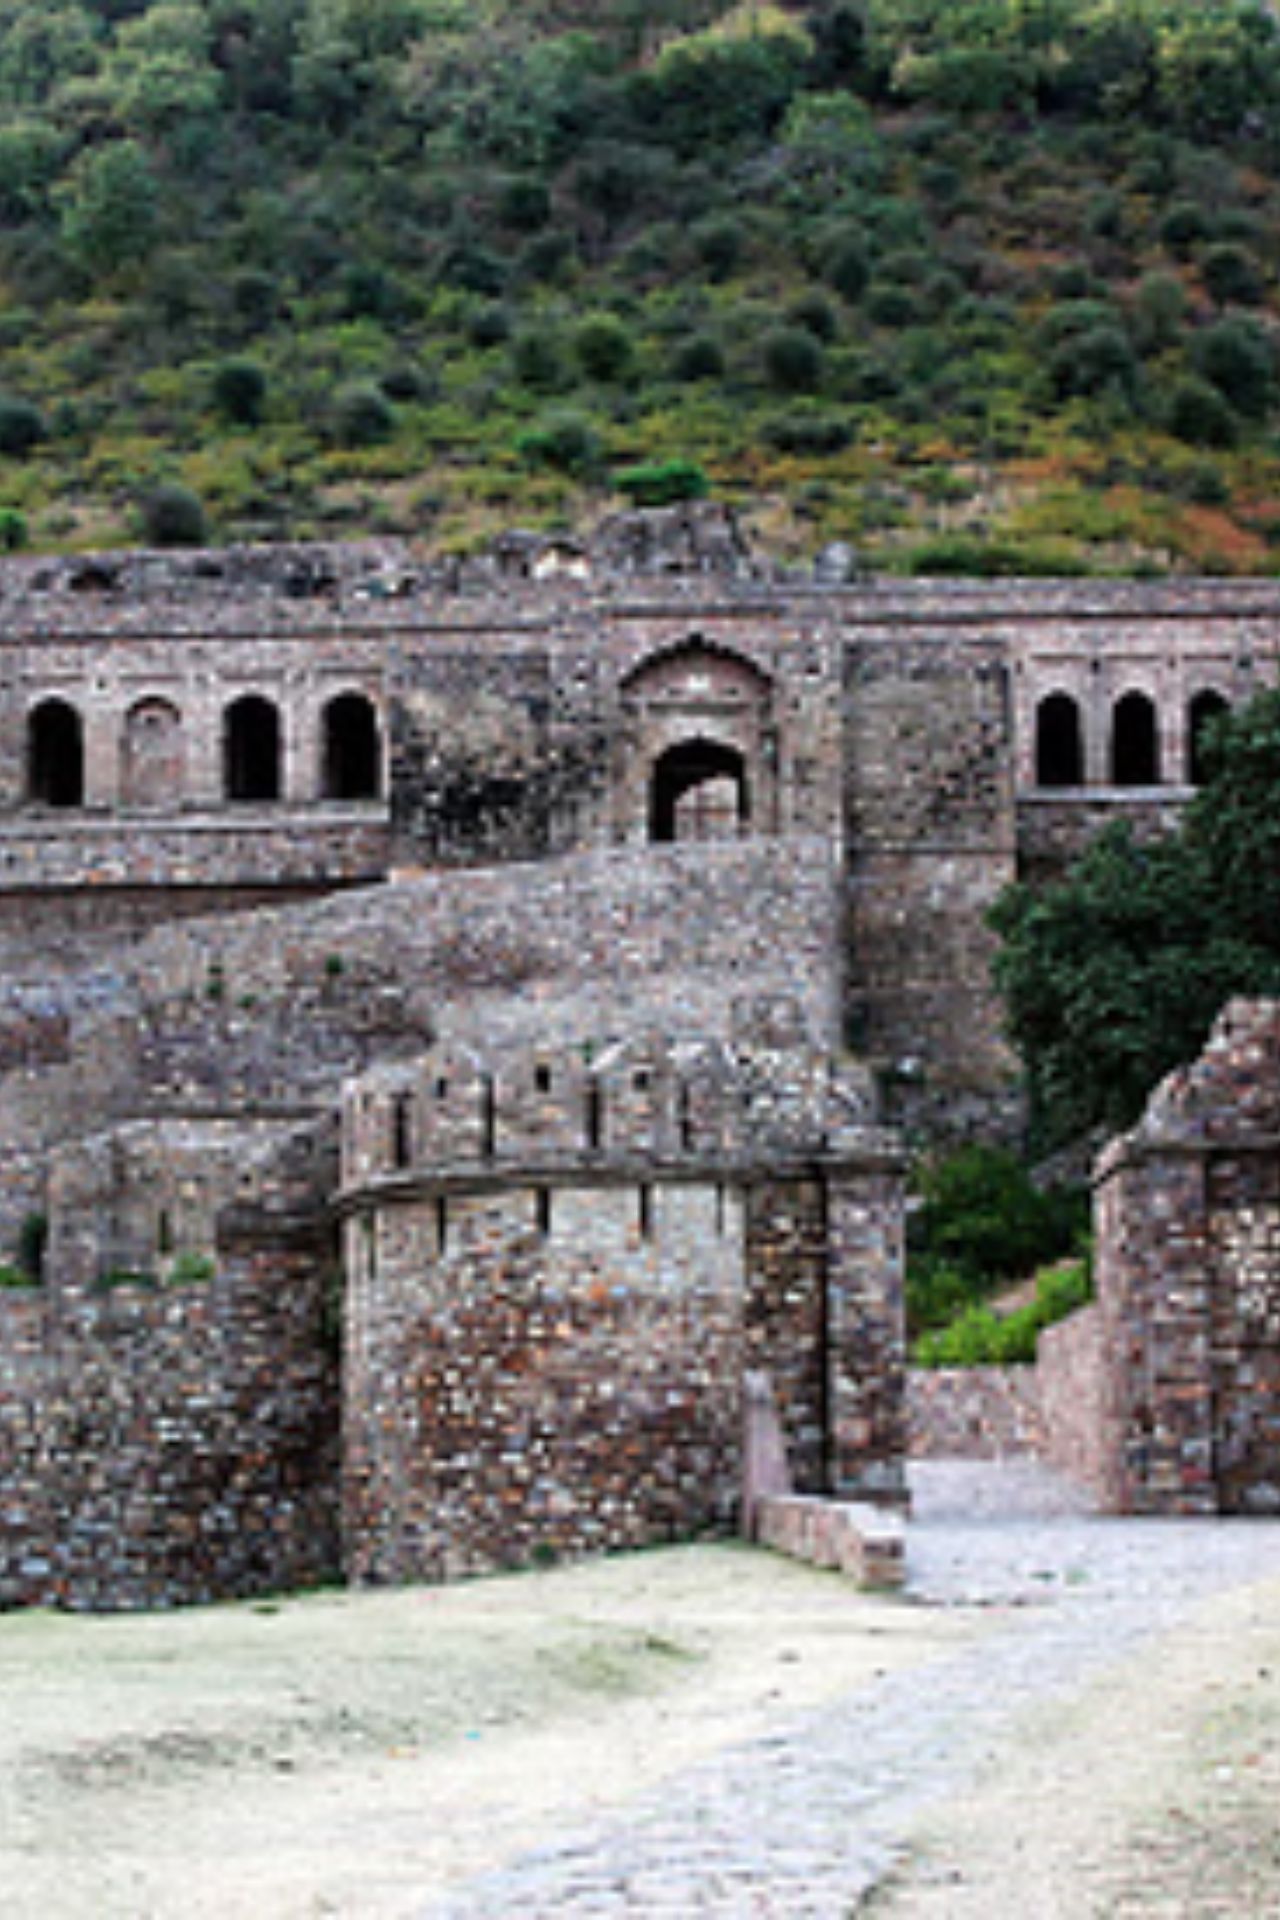 भूतों के लिए मशहूर भानगढ़ किला किसका था?